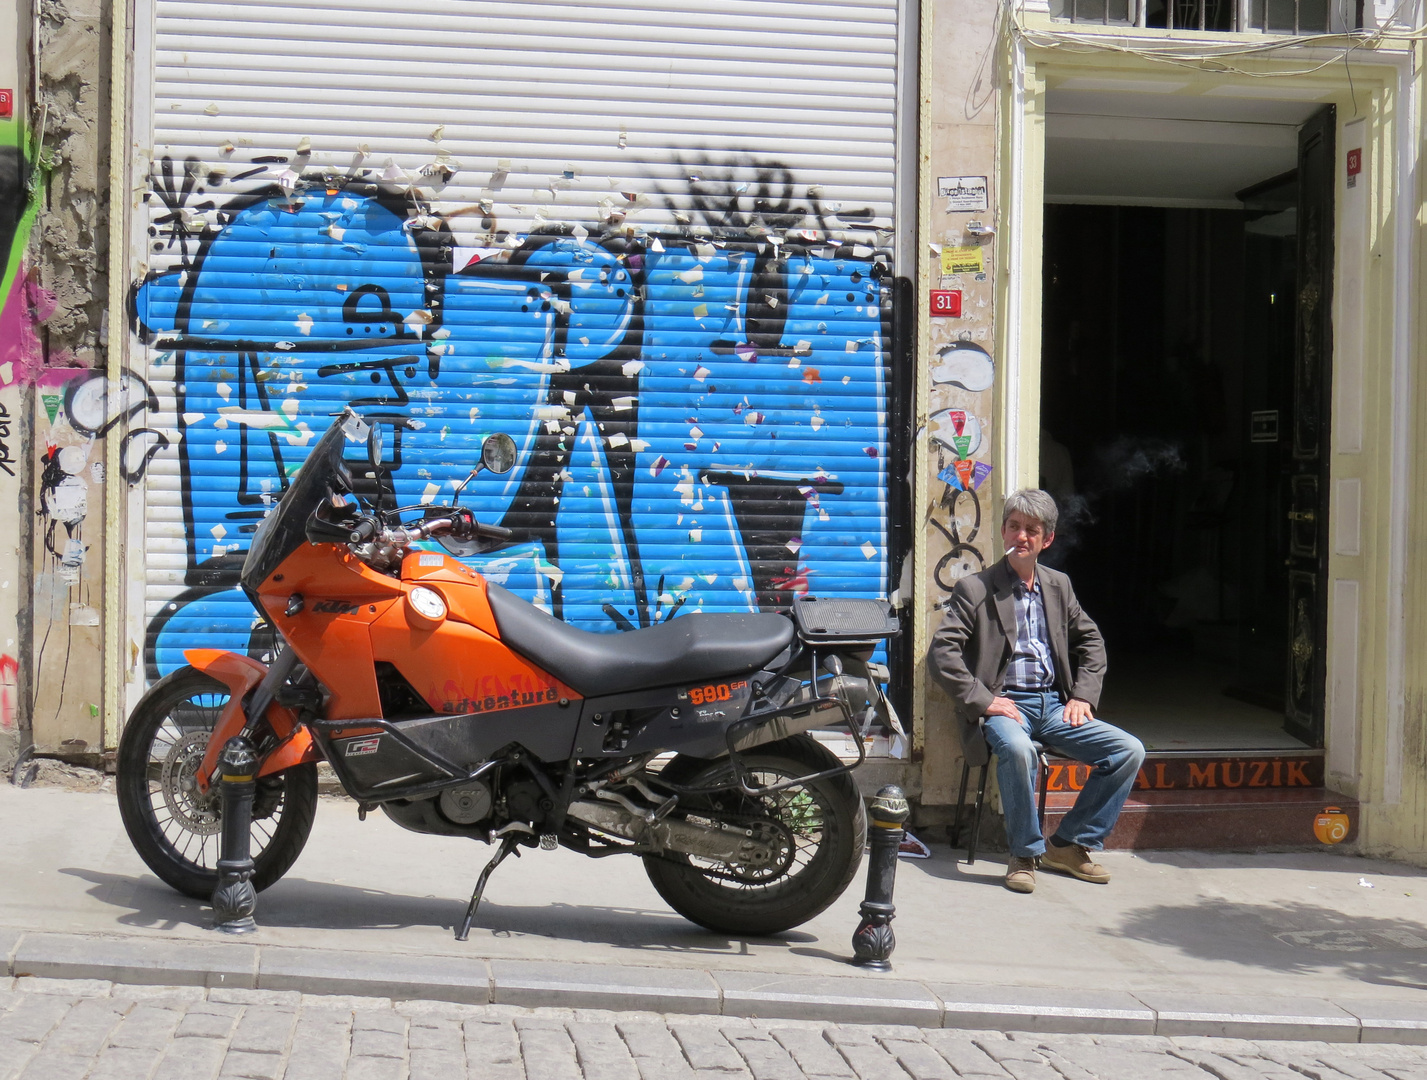 Raucher neben Motorrad vor blauem Graffiti